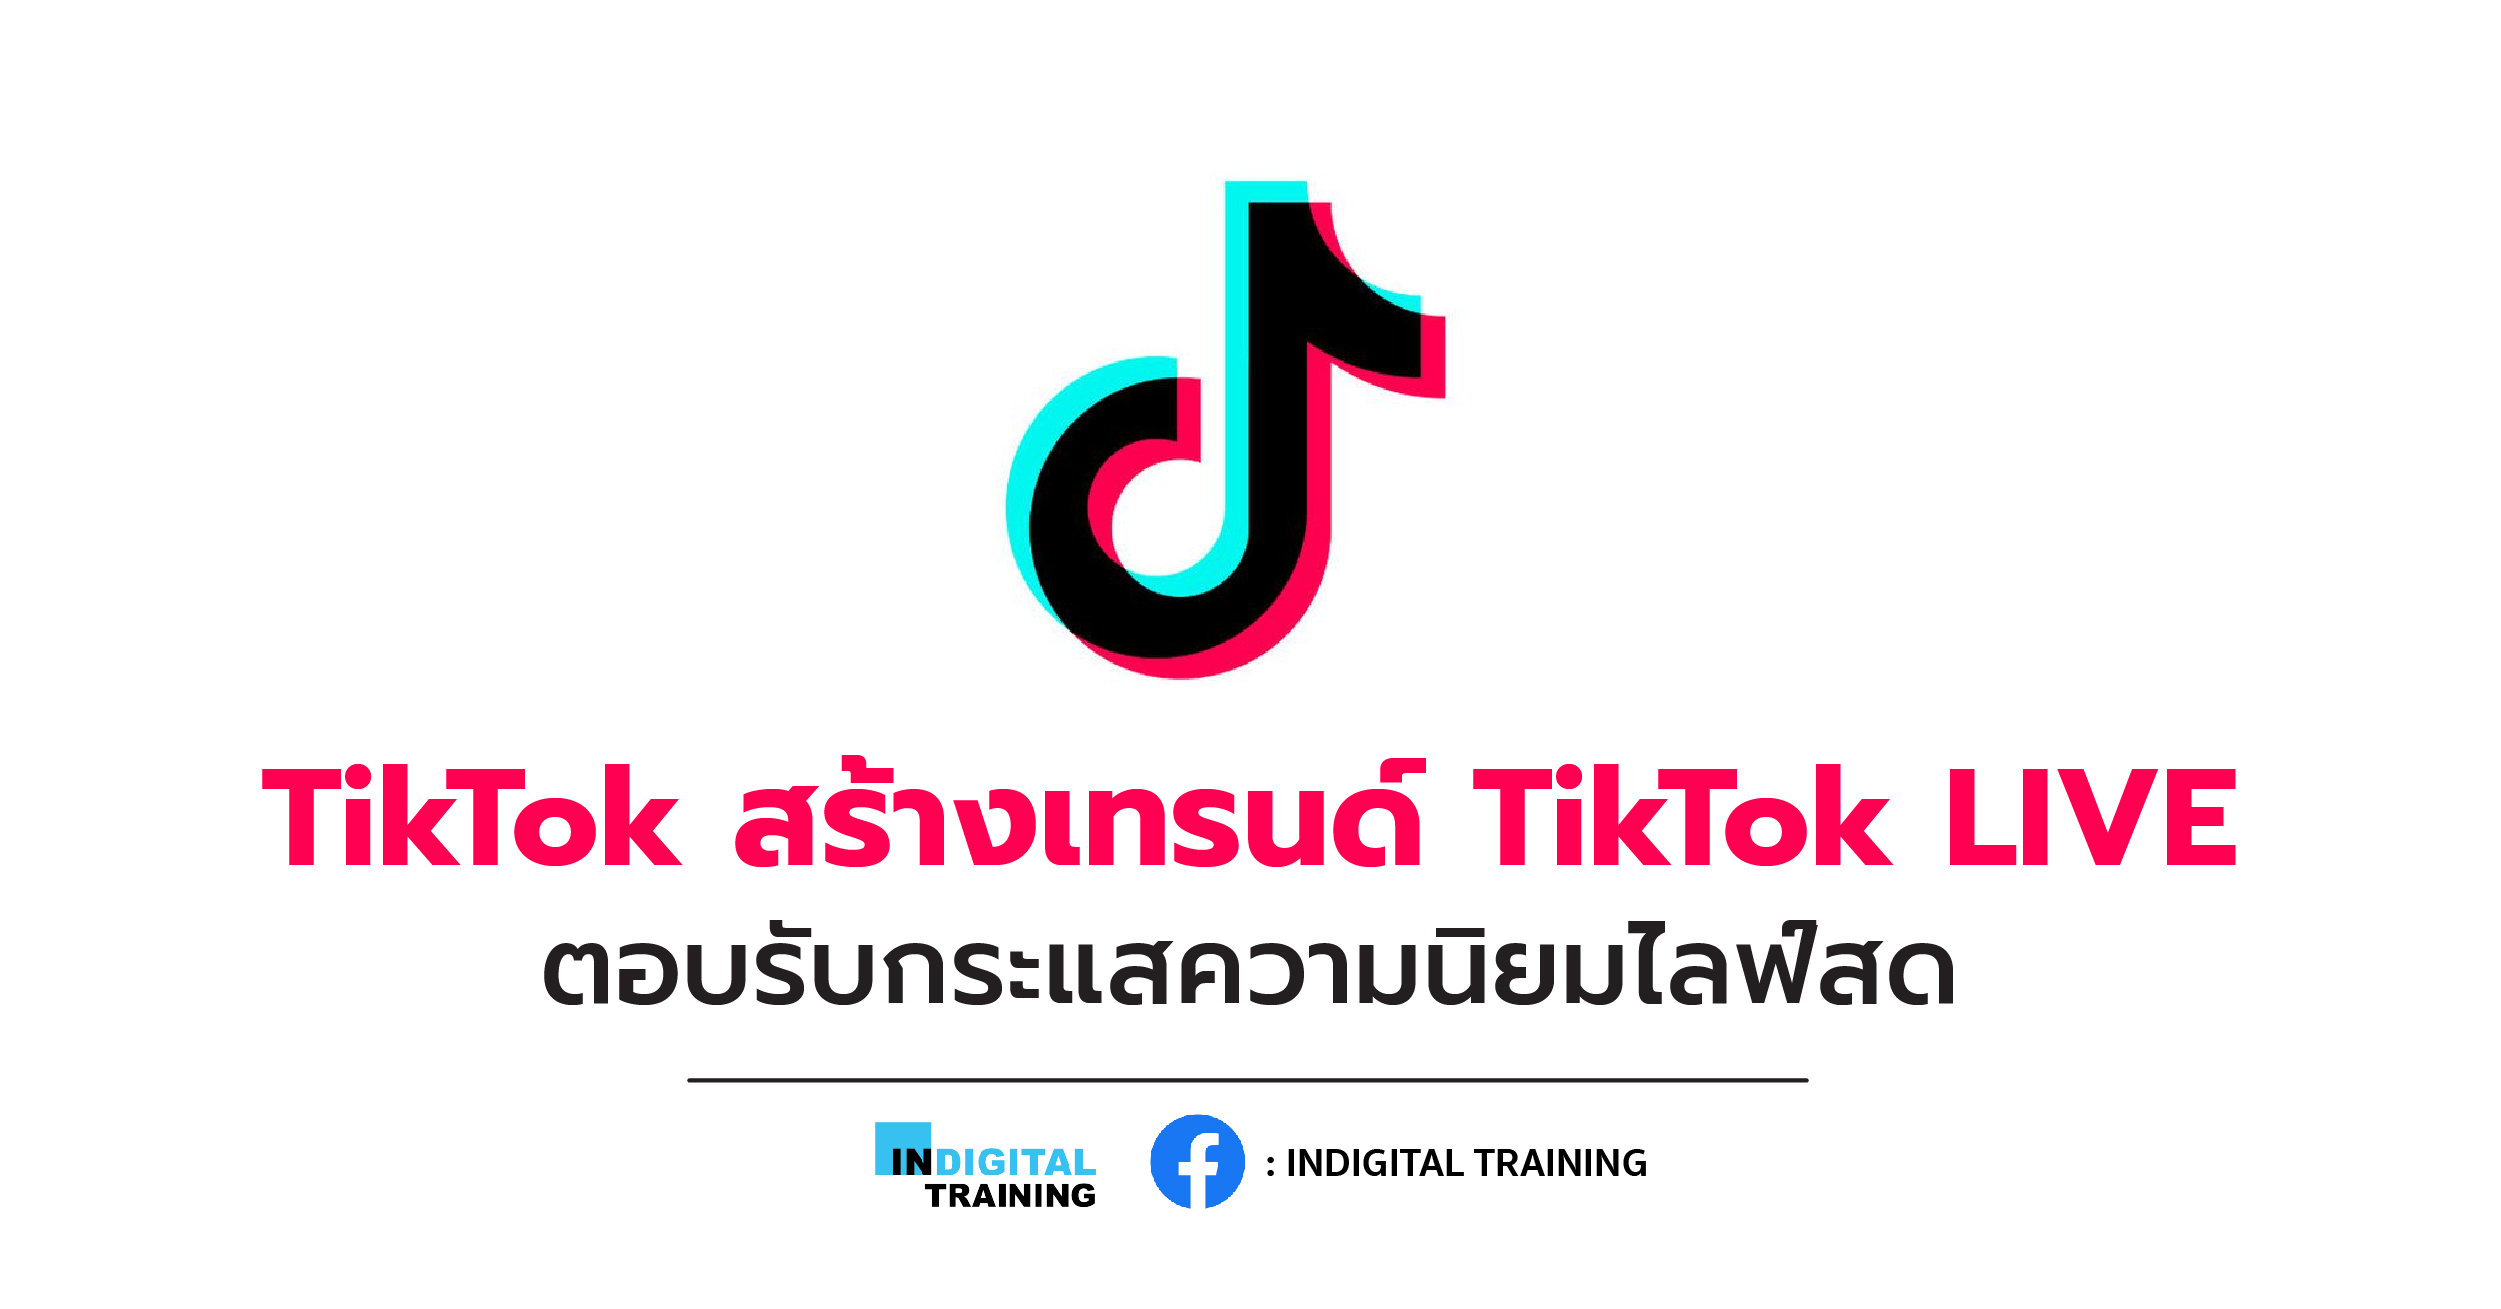 TikTok สร้างเทรนด์ TikTok LIVE ตอบรับกระแสความนิยมไลฟ์สด